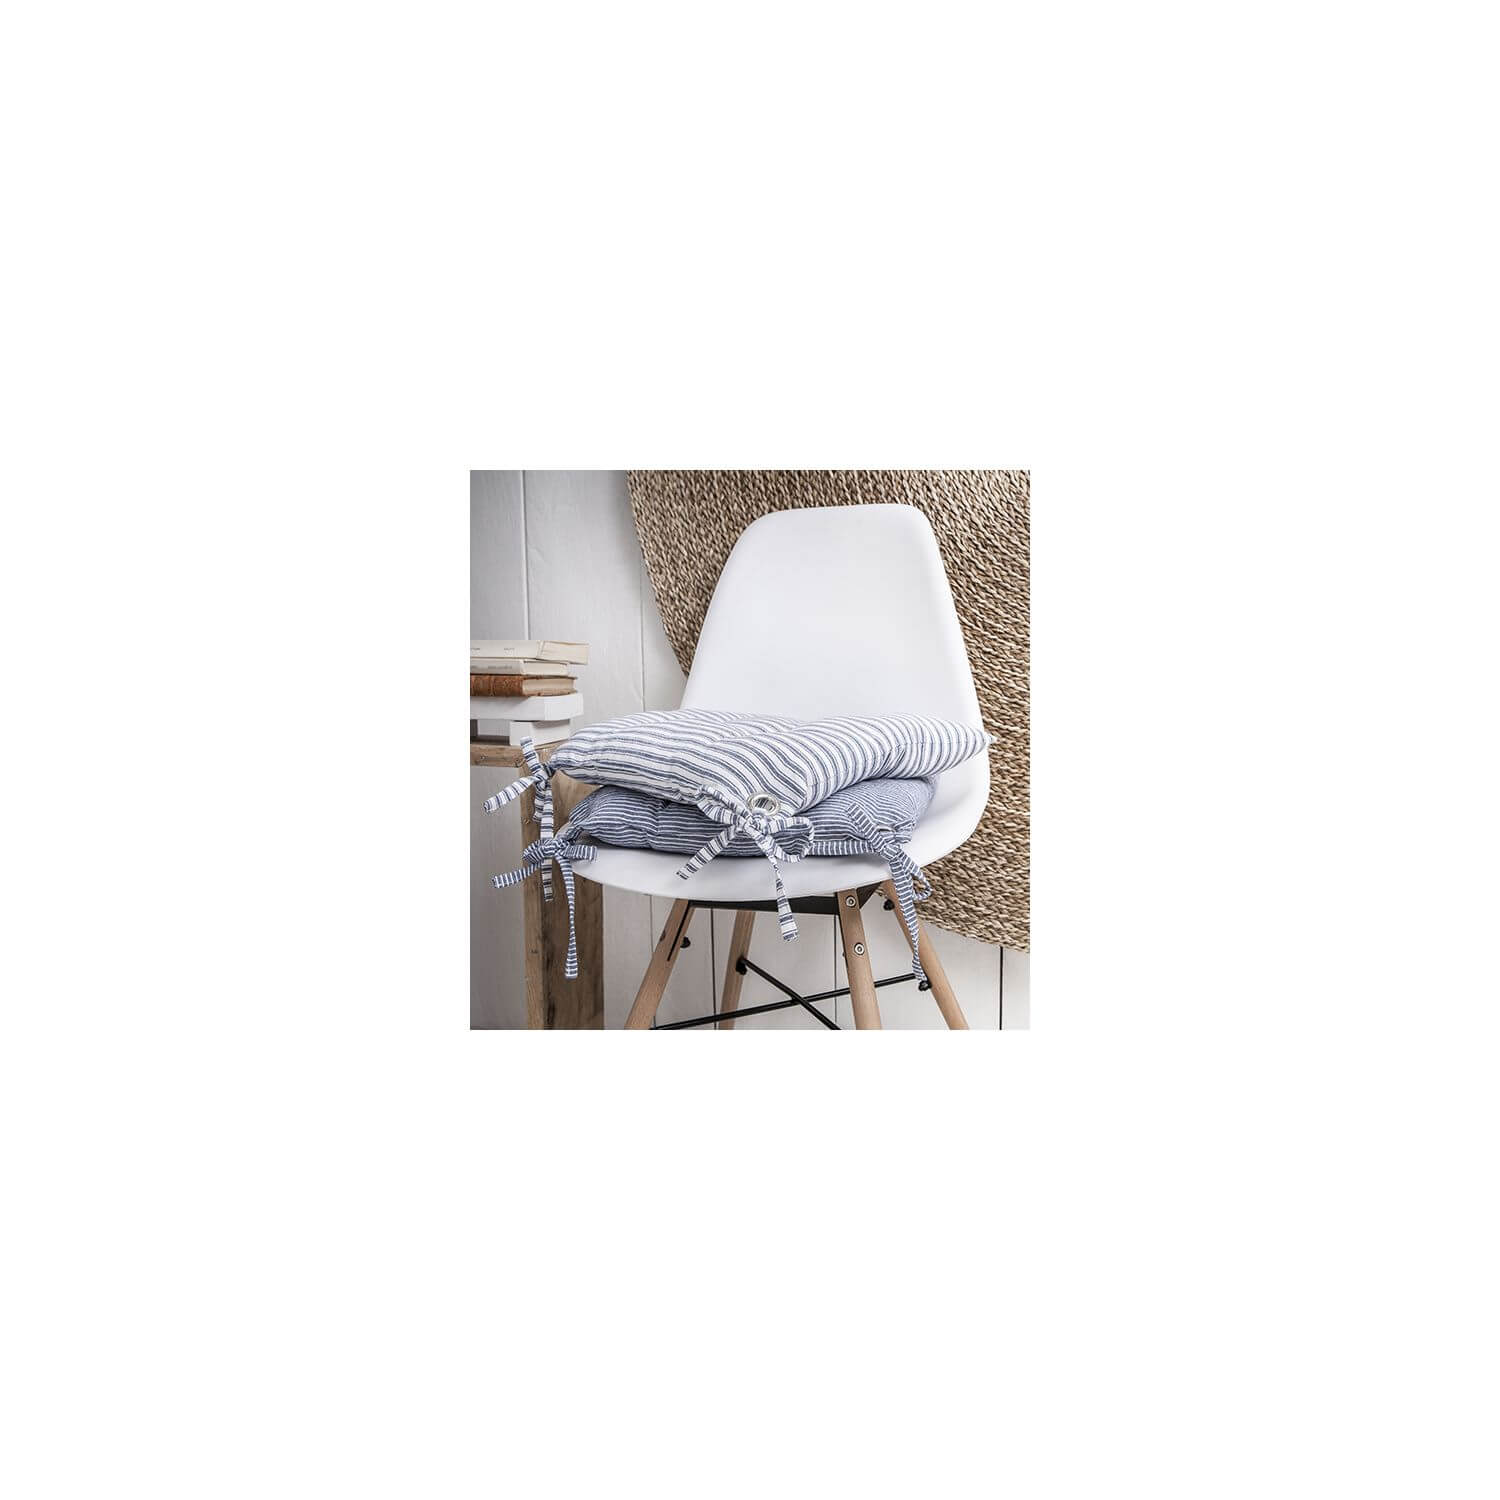 Galette de chaise - 40 x 40 cm - Rayures